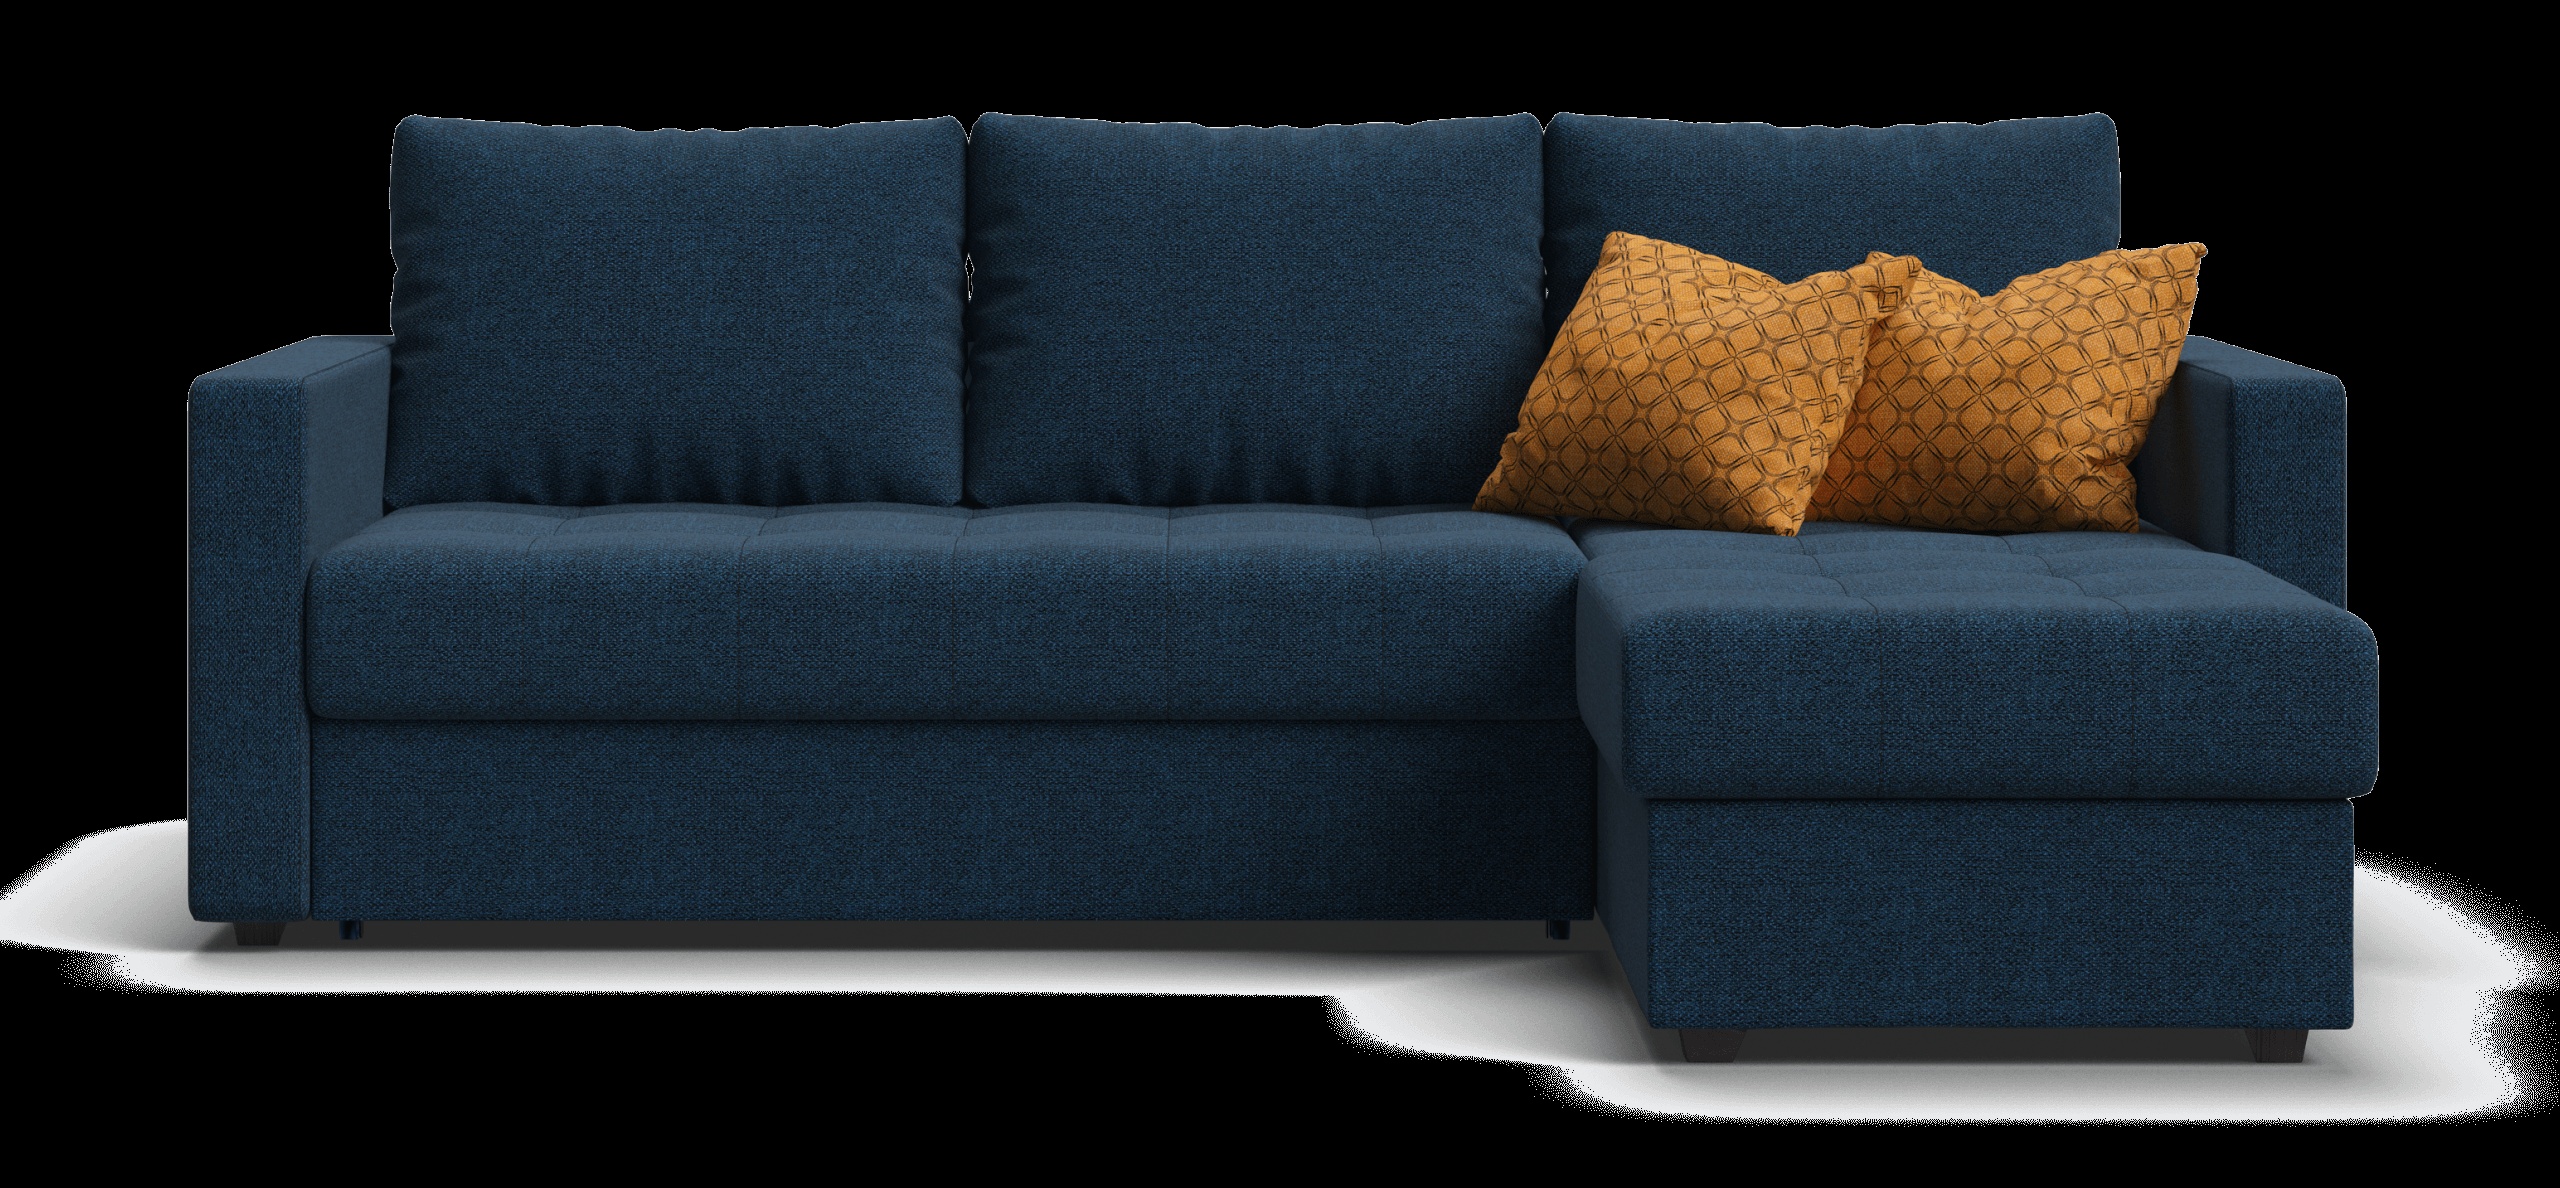 Угловой диван кельн рогожка malmo синий preview 1